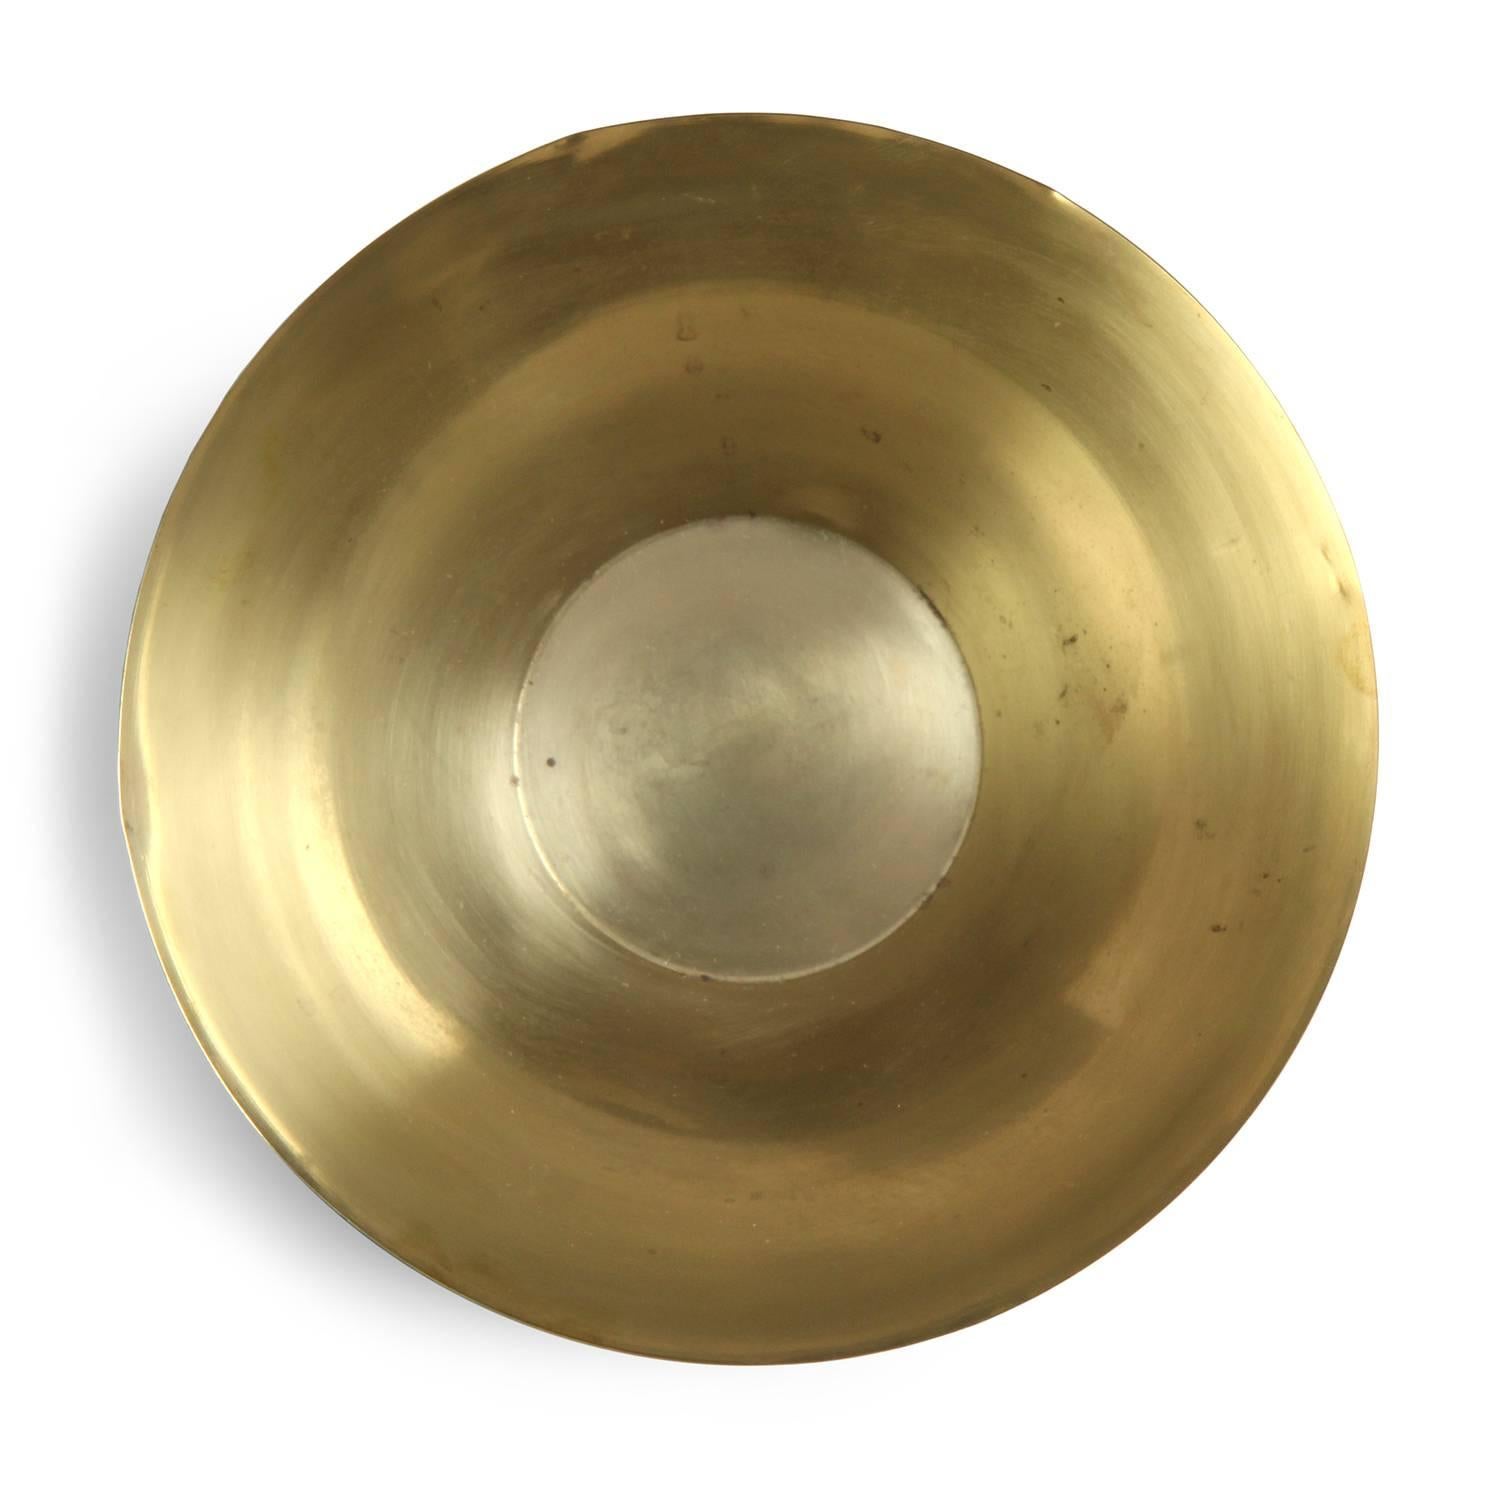 Danish Turned Brass Bowl by Arne Jacobsen for Stelton